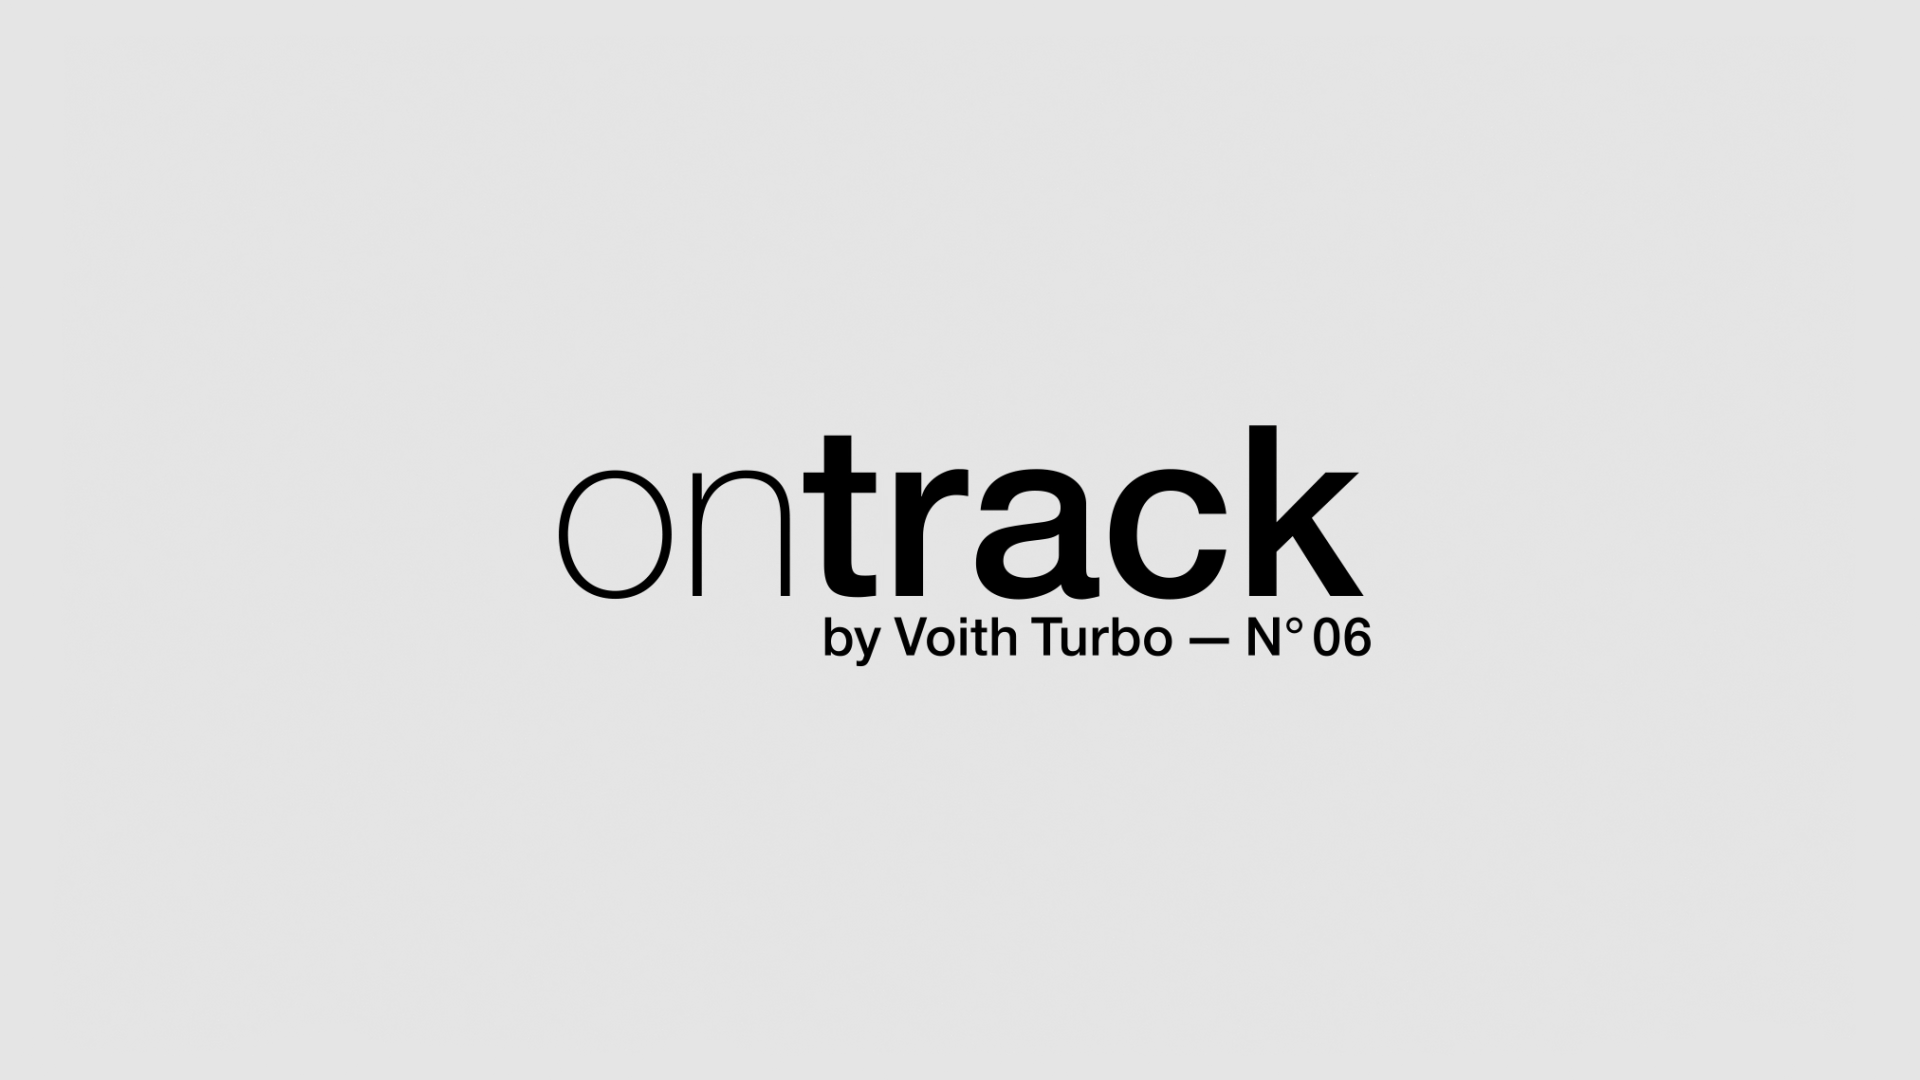 Voith Turbo Kundenmagazin ontrack#6